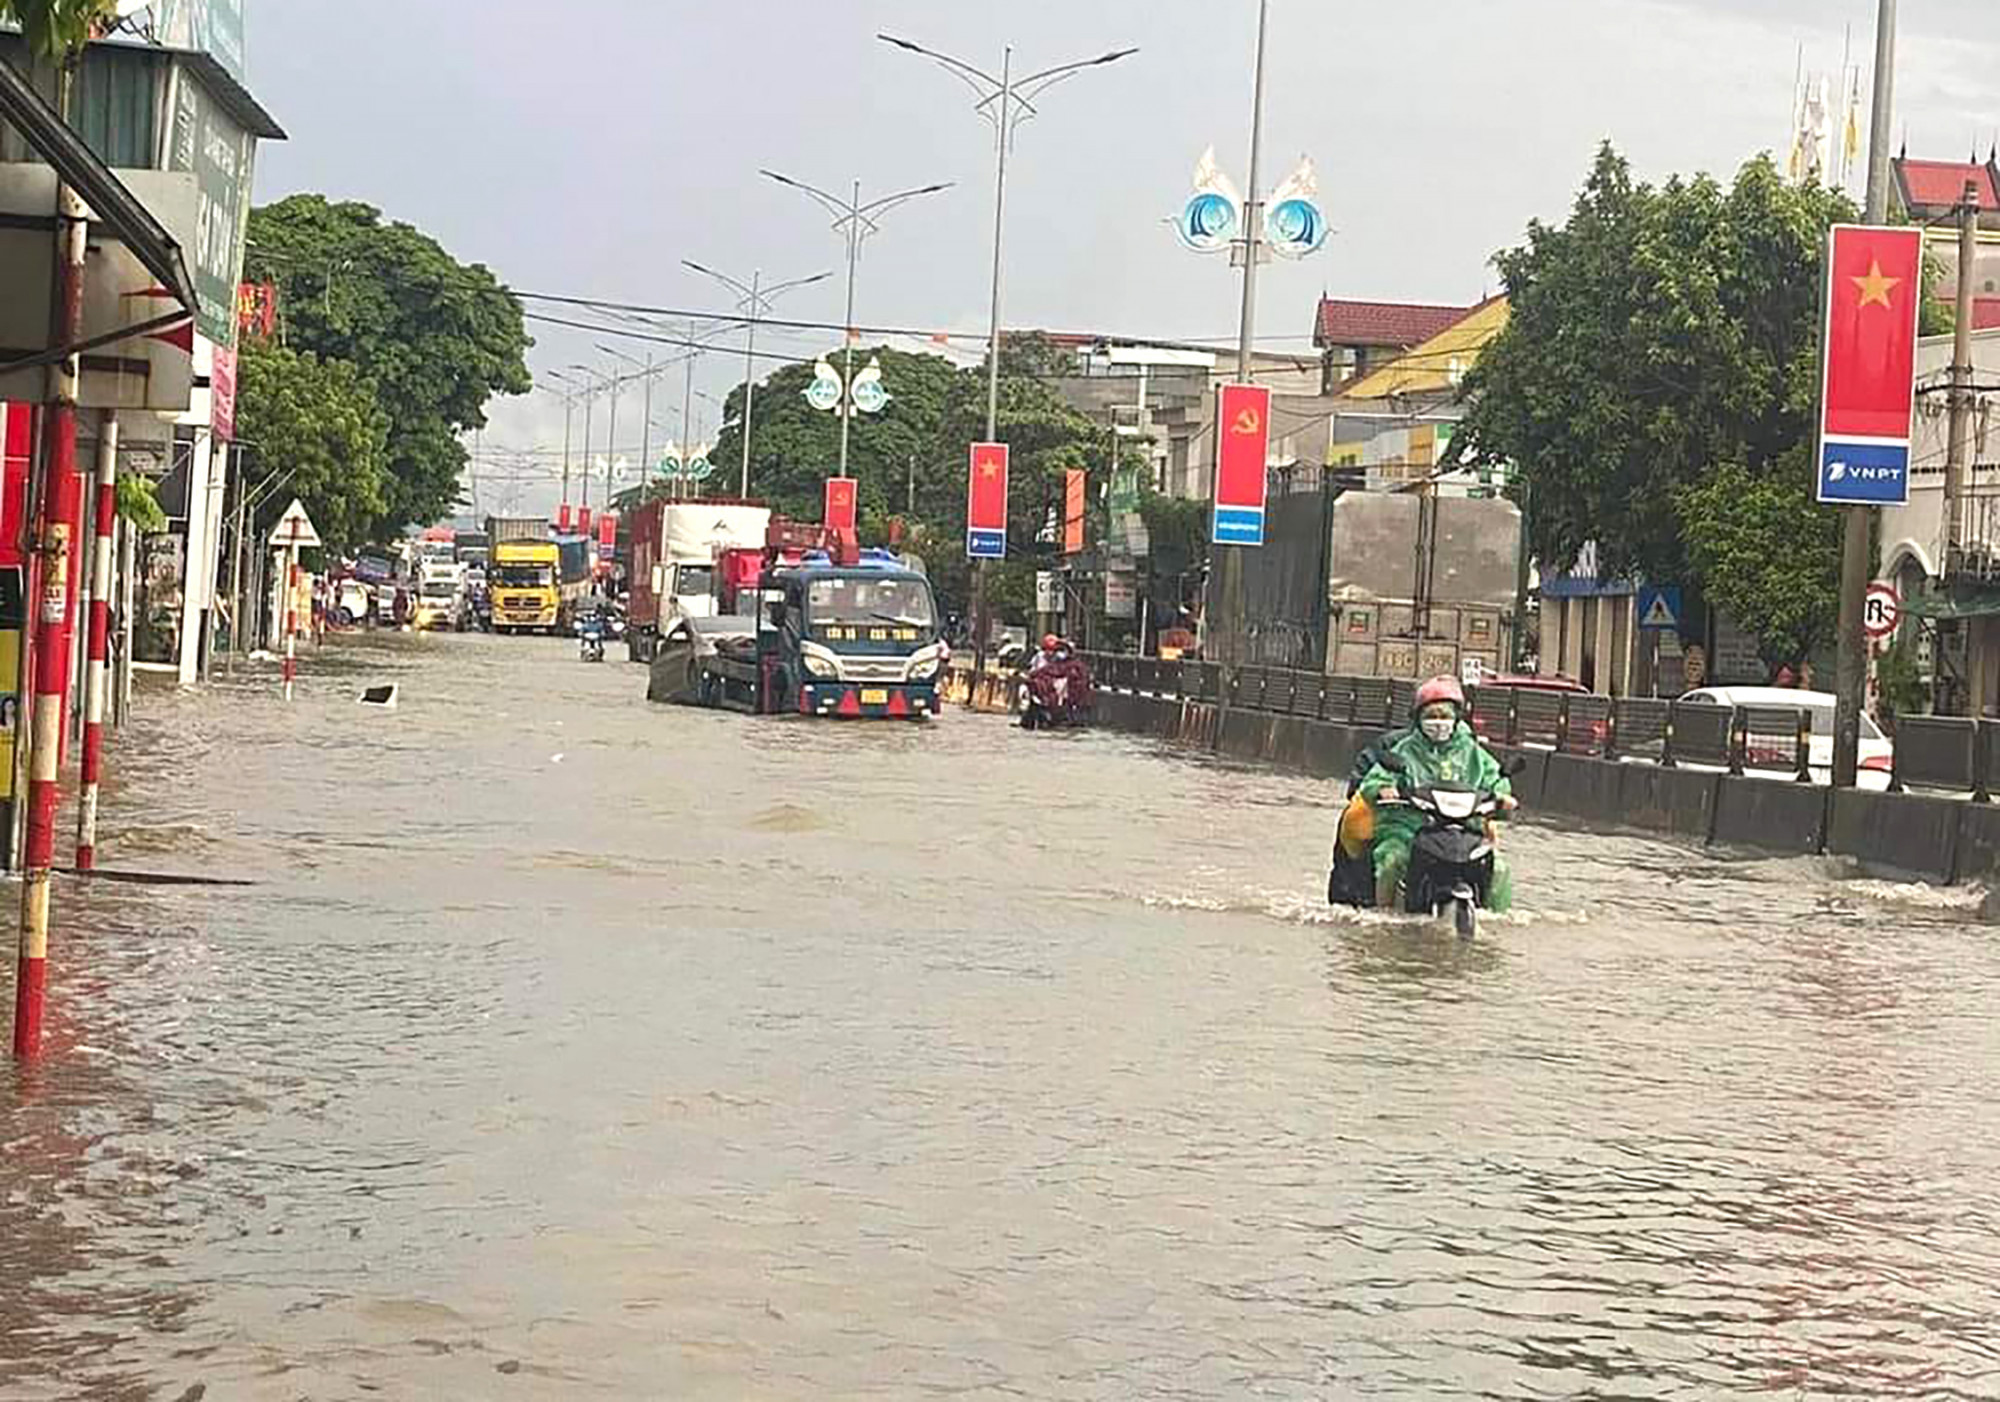 Quốc lộ 1 đoạn qua huyện Quỳnh Lưu bị ngập sâu